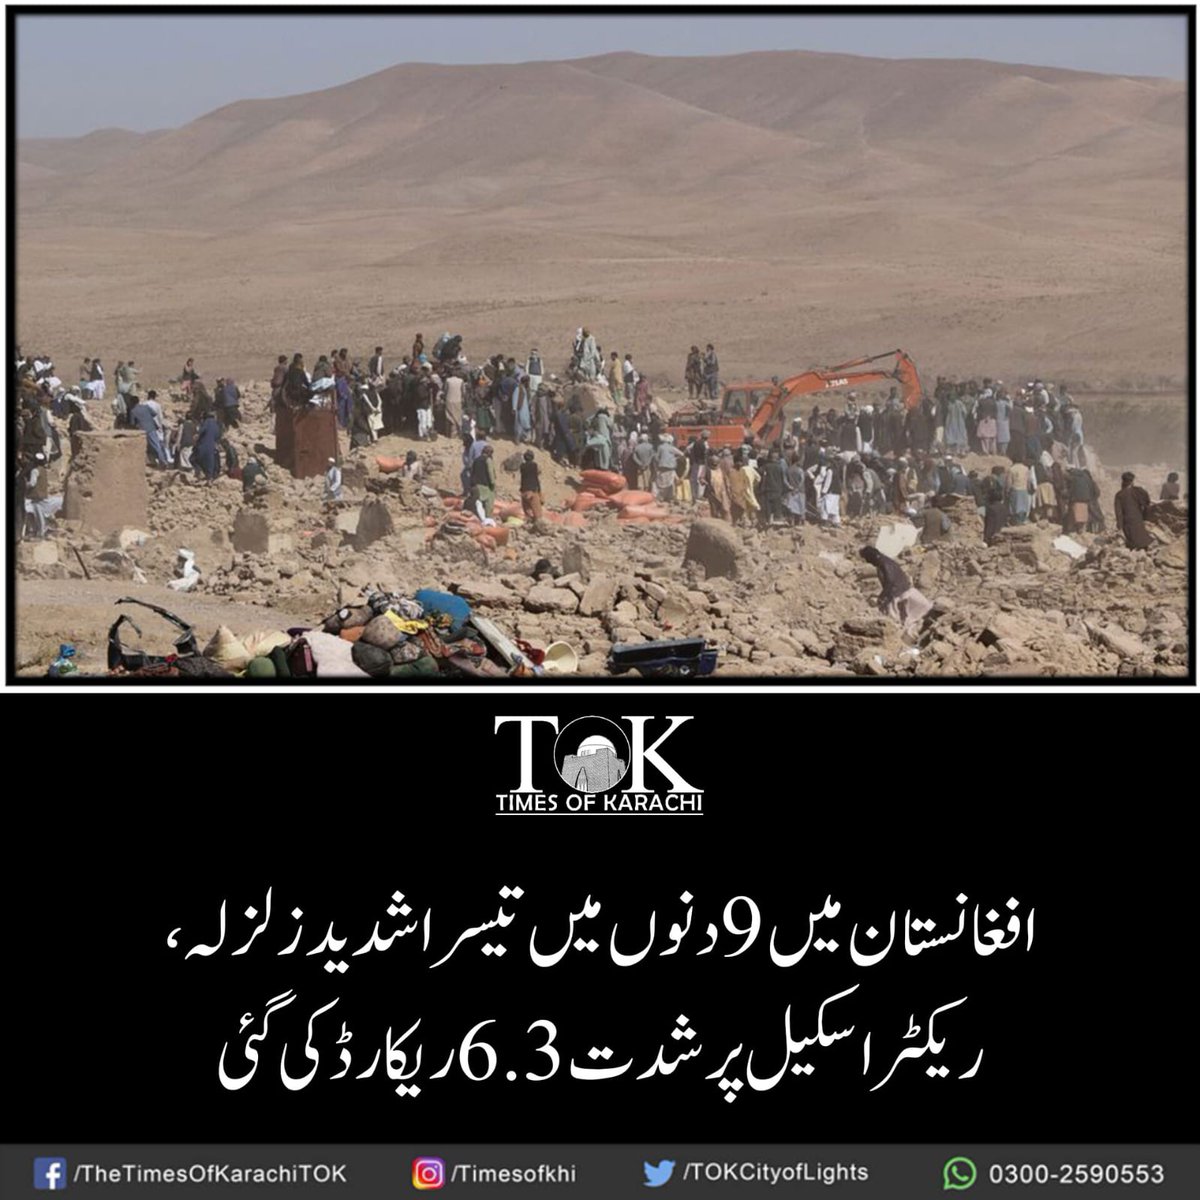 تفصیلات، bit.ly/3M0RDSP

#TOKAlert #AfghanistanEarthquake